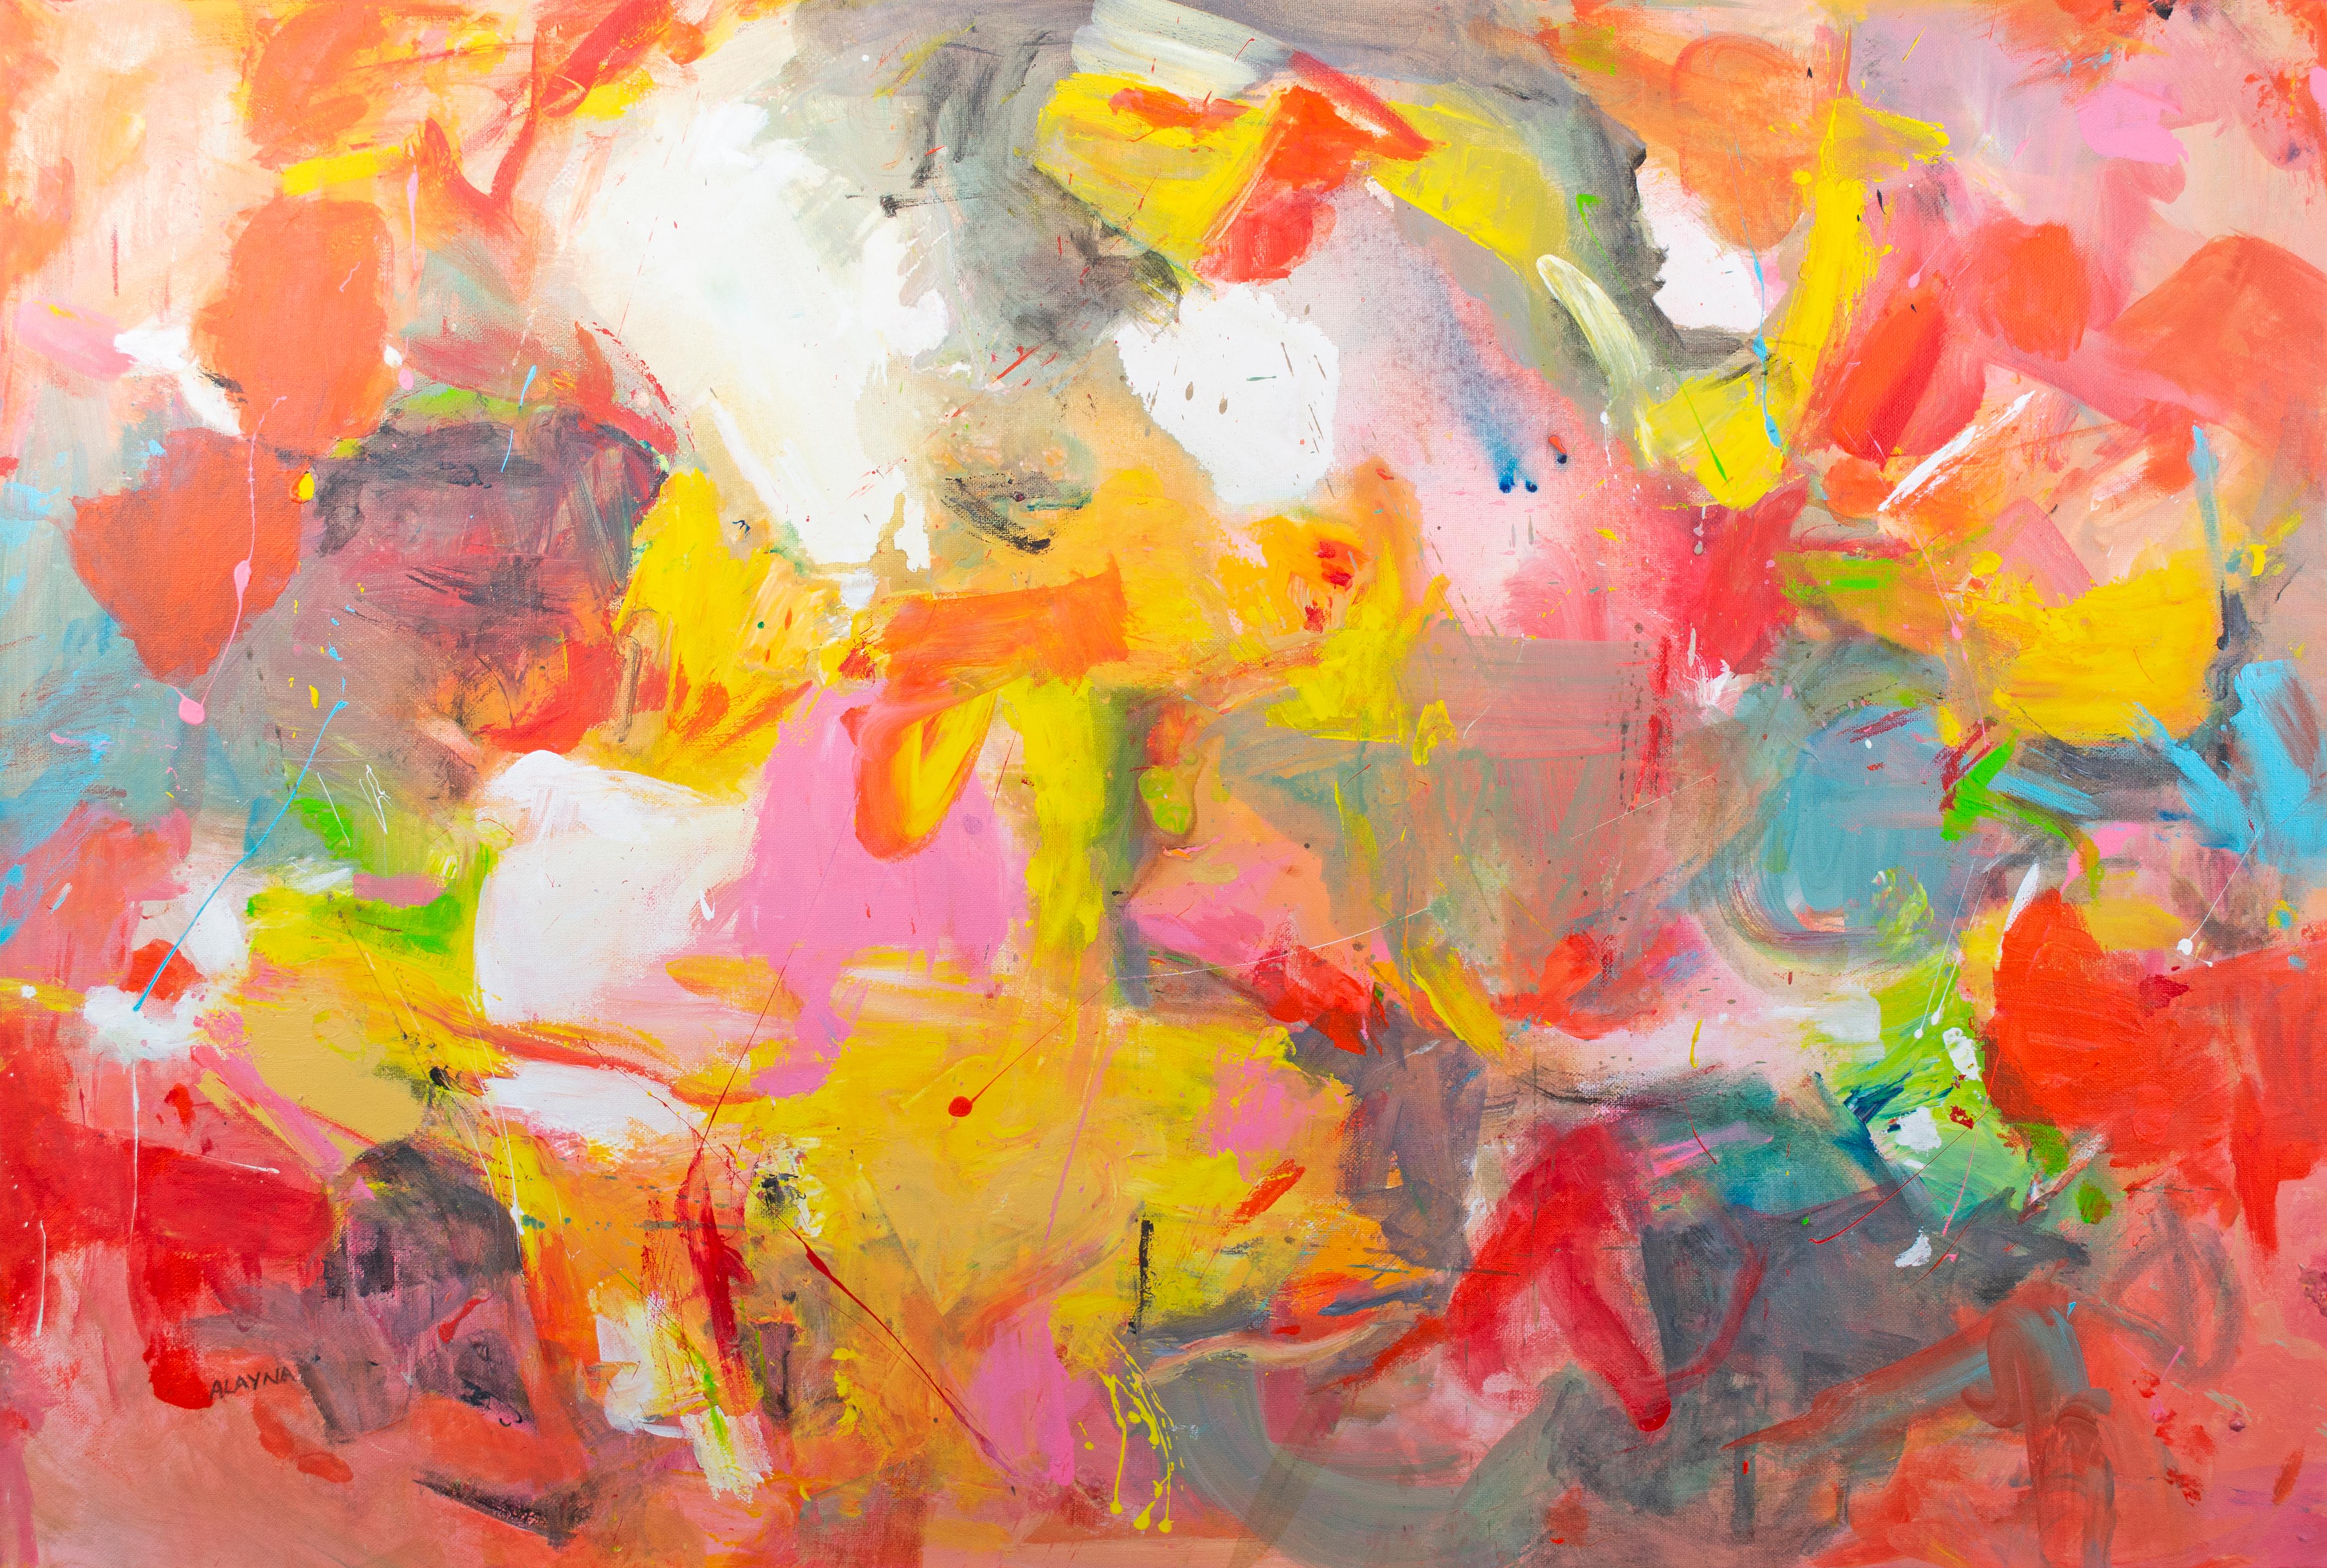 "Ongoing" est une peinture acrylique originale sur toile d'Alayna Rose, signée par l'artiste en bas à gauche. Influencées par les expressionnistes abstraits comme Helen Frankenthaler, les œuvres de Rose se caractérisent par une utilisation abstraite